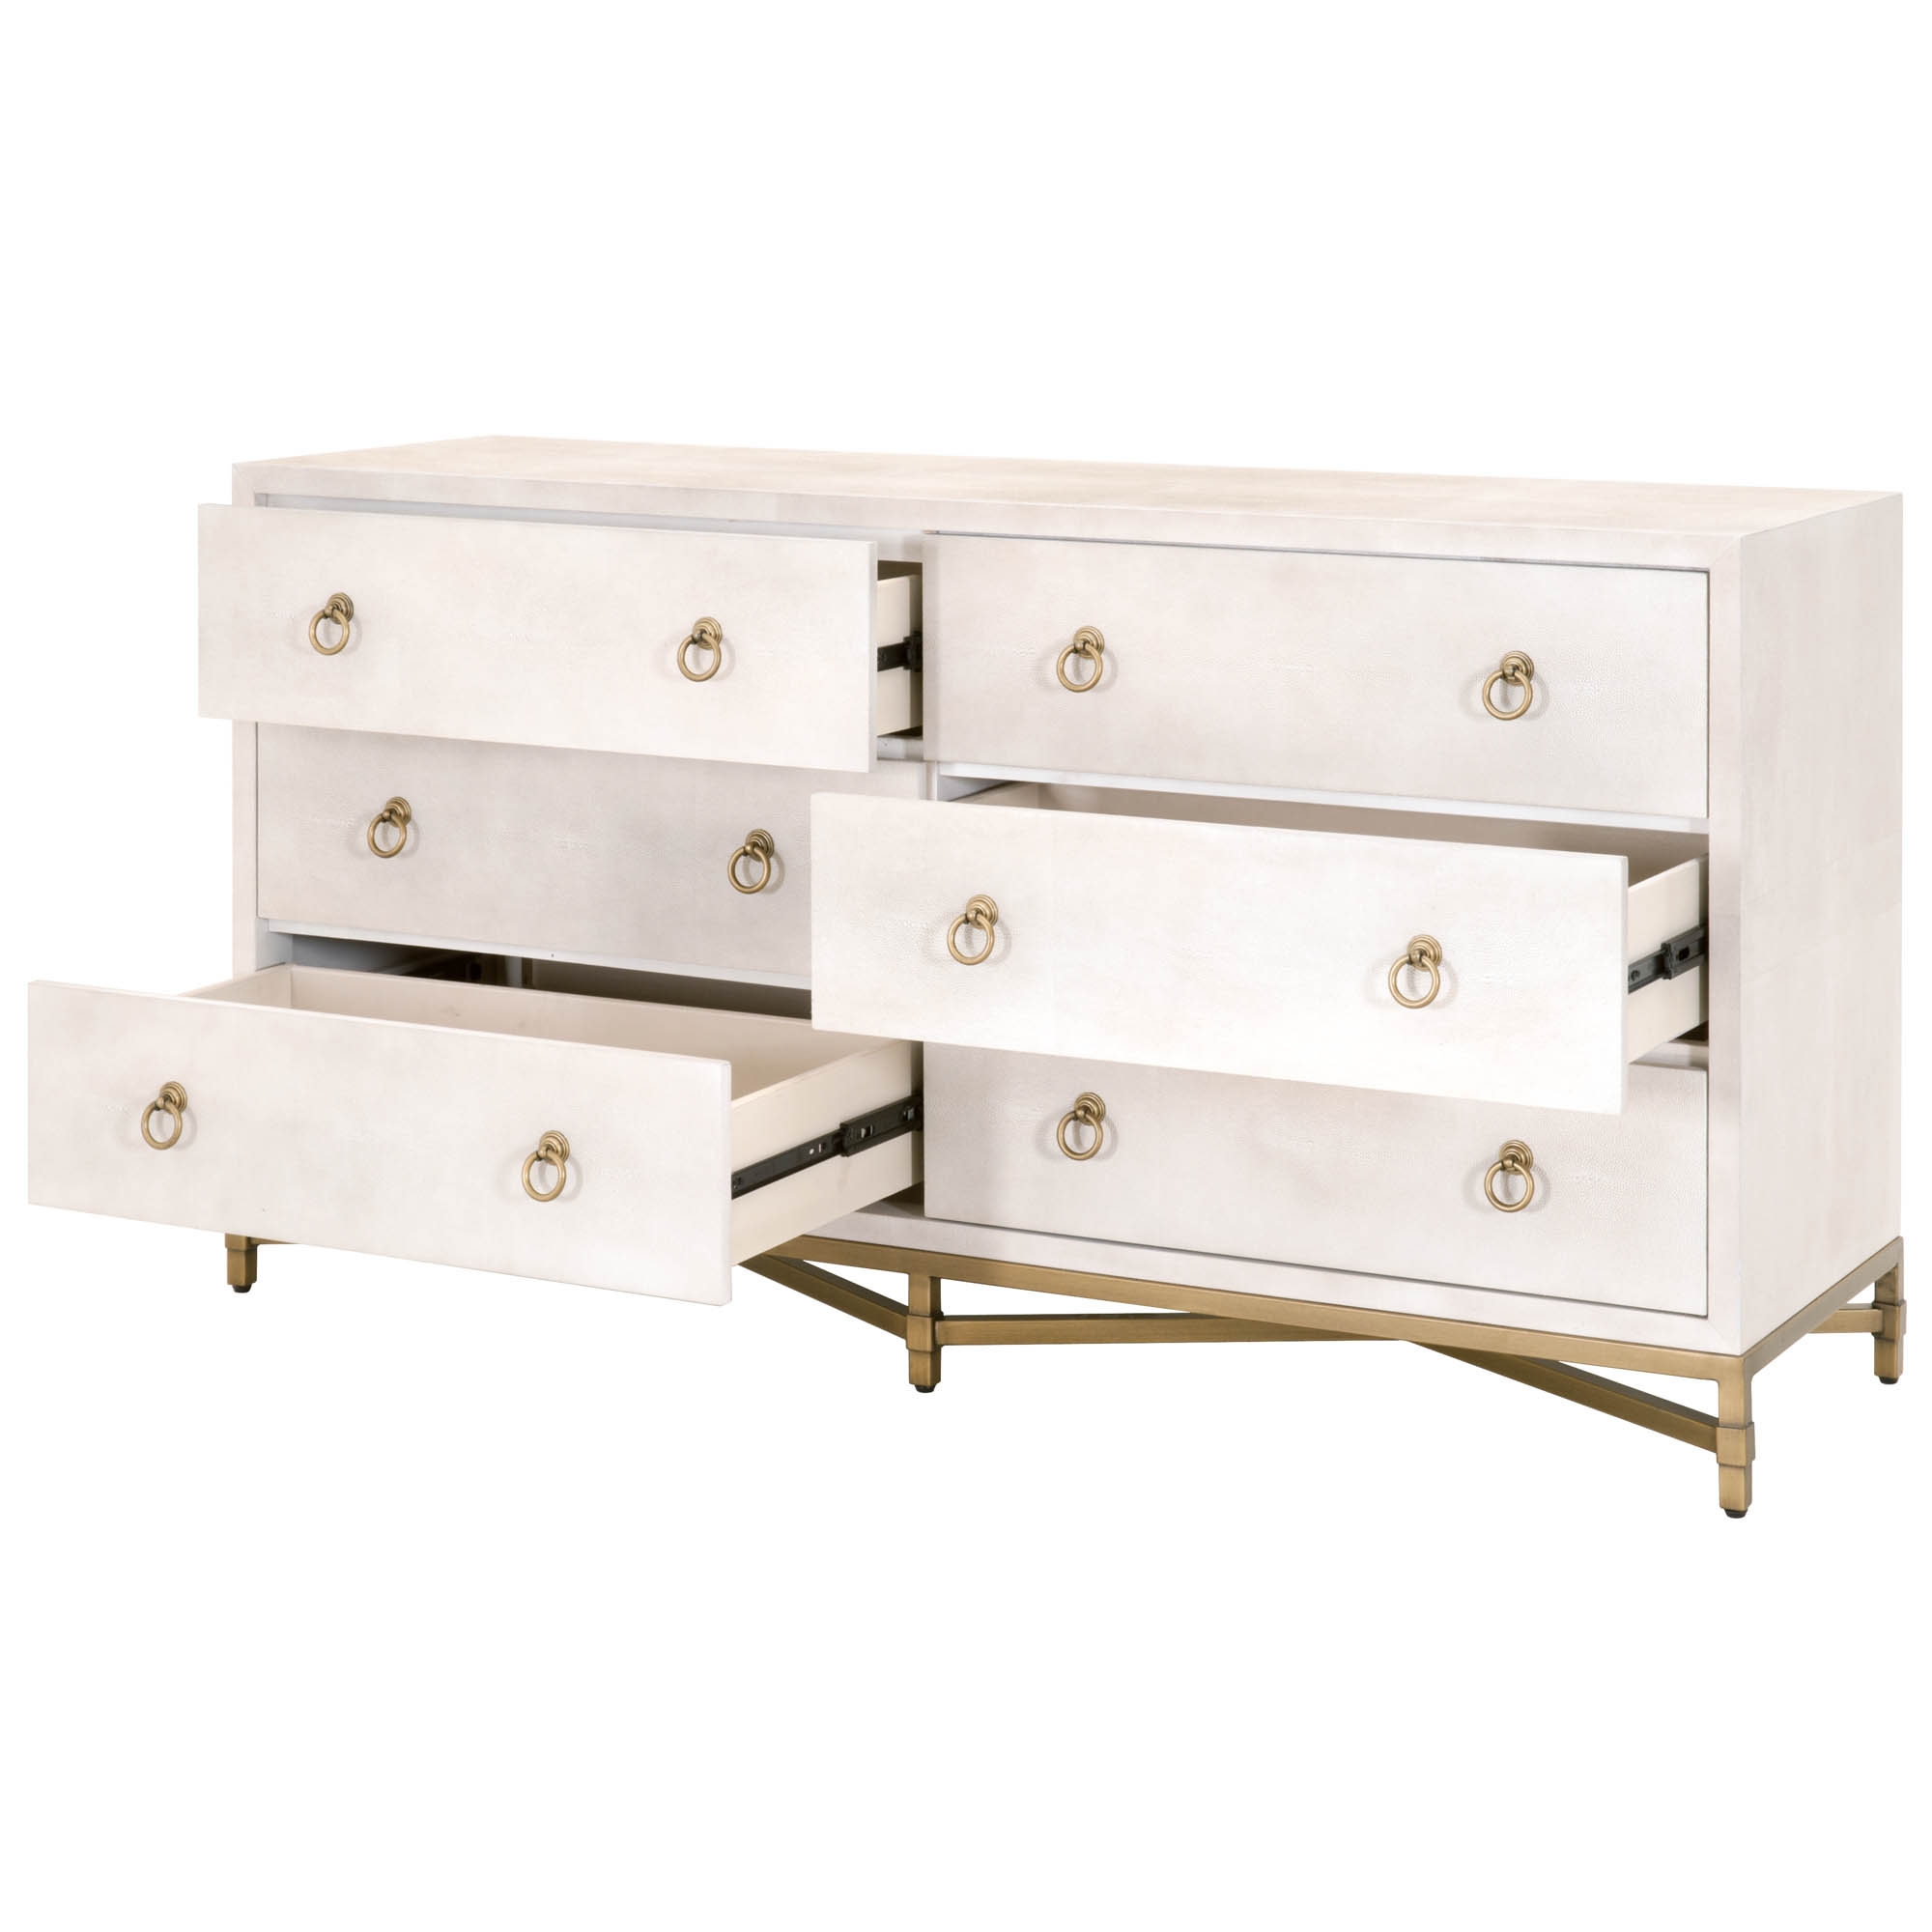 Strand Shagreen 6-Drawer Double Dresser, White & Gold - Image 4